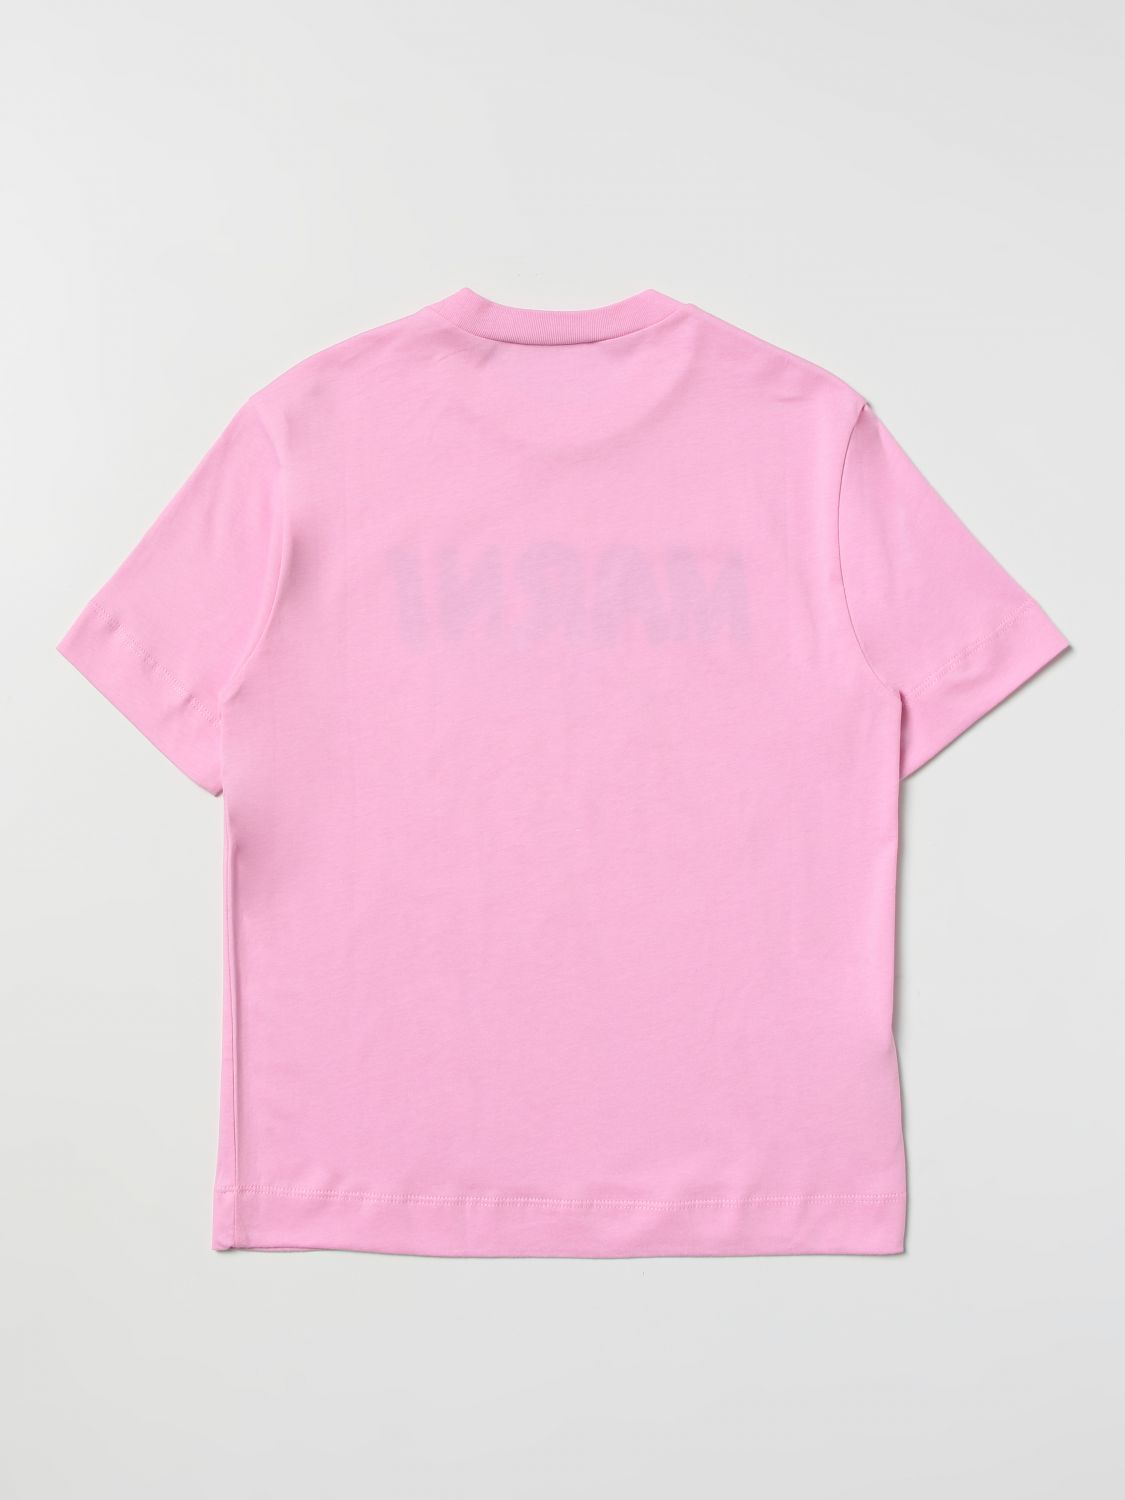 T-shirt Marni: Marni t-shirt for boy pink 2